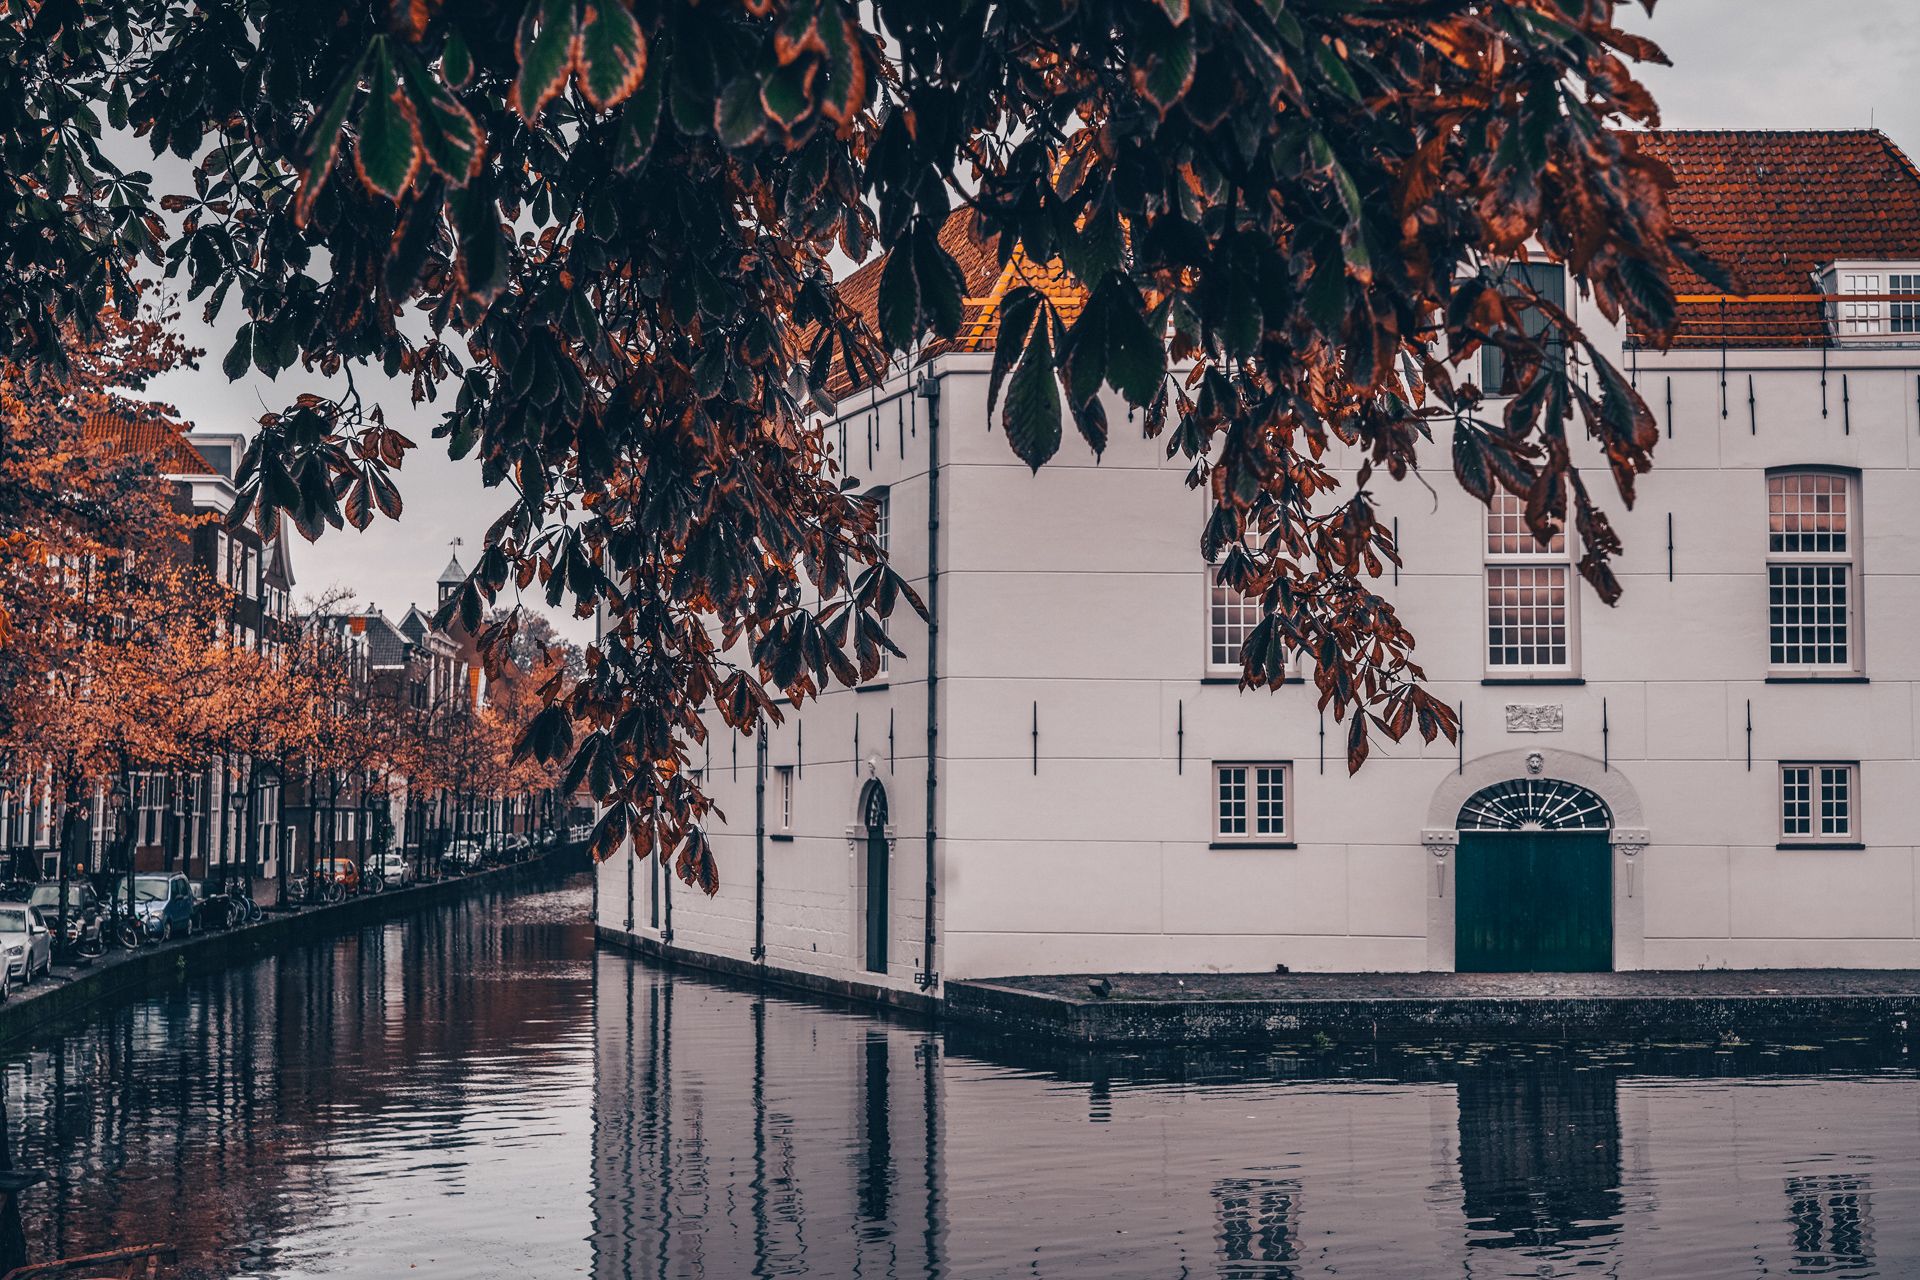 🇳🇱 代尔夫特的秋天  一座古老而安静的小城，这里没有阿姆斯特丹那样喧嚣的人群和车流，只有宁静的街道